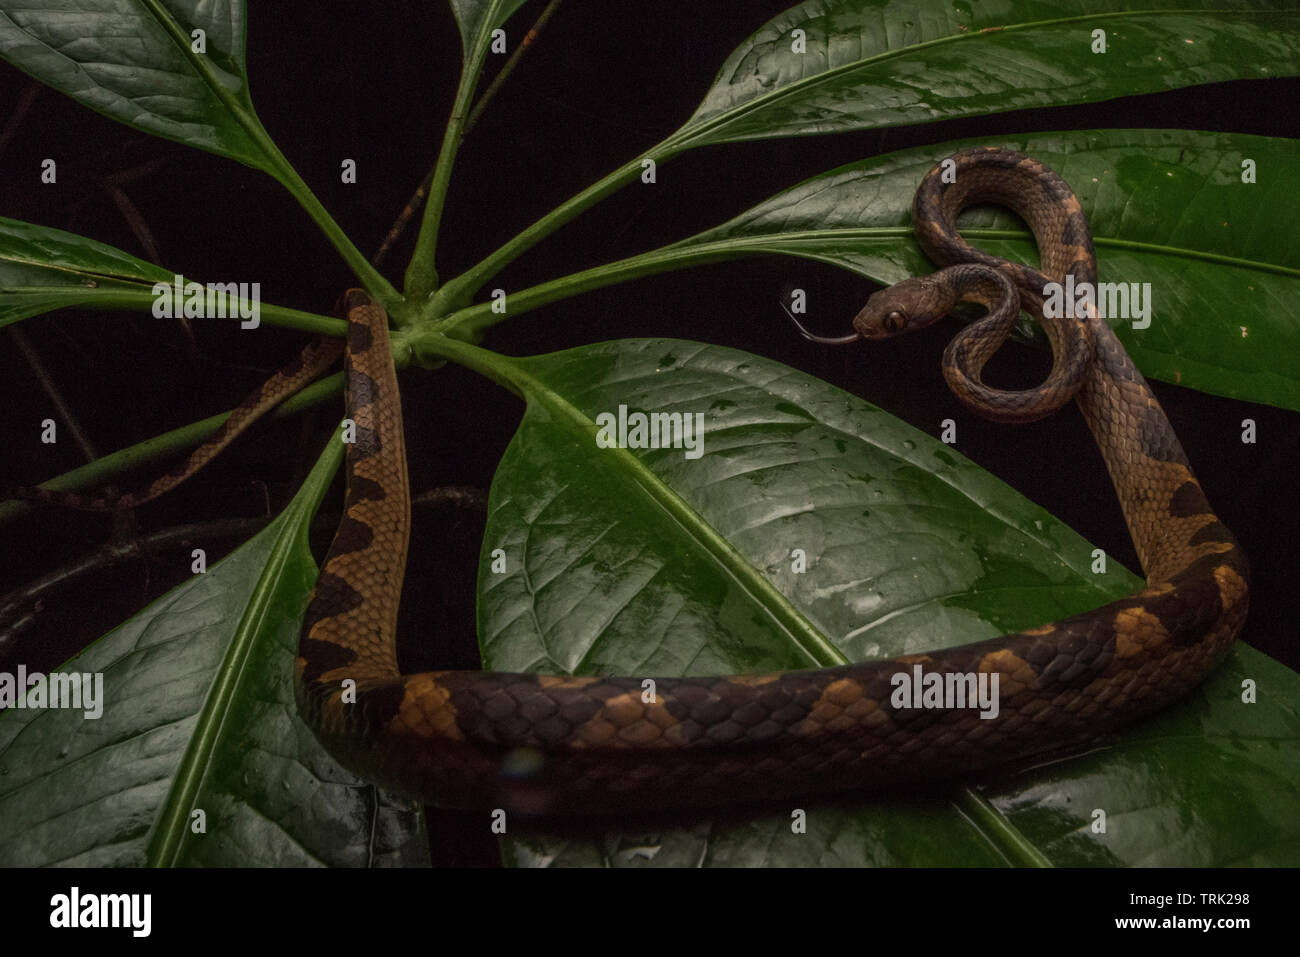 Un serpent aux yeux de chat (Leptodeira septentrionalis) enroulé sur une plante en parc national Yasuni de l'Équateur dans la forêt amazonienne. Banque D'Images